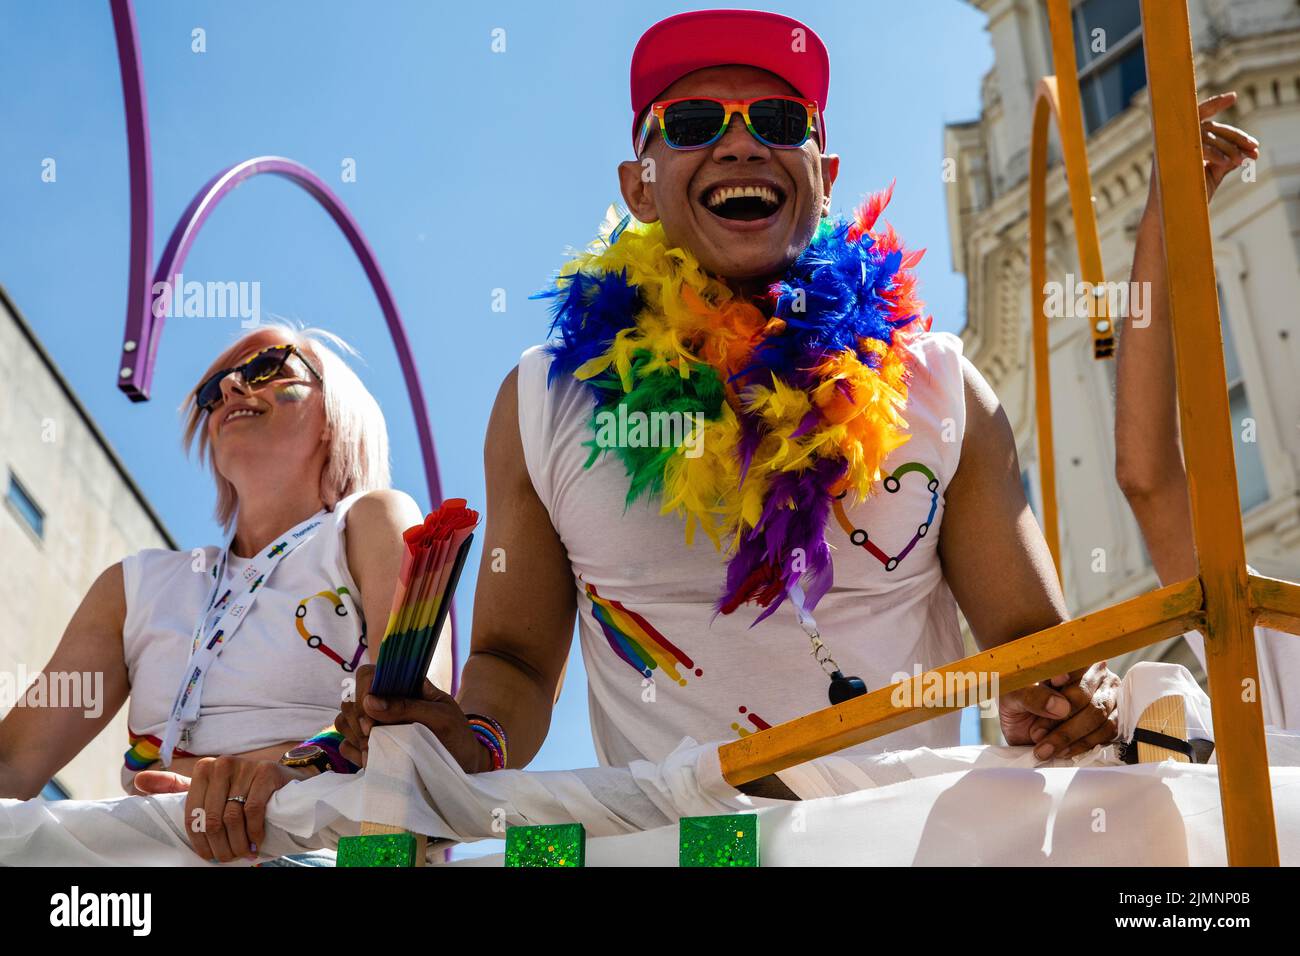 Brighton, Reino Unido. 6th de agosto de 2022. Un juerguero que lleva guirnalda y gafas de sol Pride sonríe desde la parte superior de un autobús de dos pisos durante el 30th aniversario del desfile de la comunidad LGBTQ+ de Brighton & Hove Pride. Brighton & Hove Pride tiene la intención de celebrar y promover el respeto, la diversidad y la inclusión dentro de la comunidad local, así como apoyar a las organizaciones benéficas y causas locales a través de la recaudación de fondos. Crédito: Mark Kerrison/Alamy Live News Foto de stock